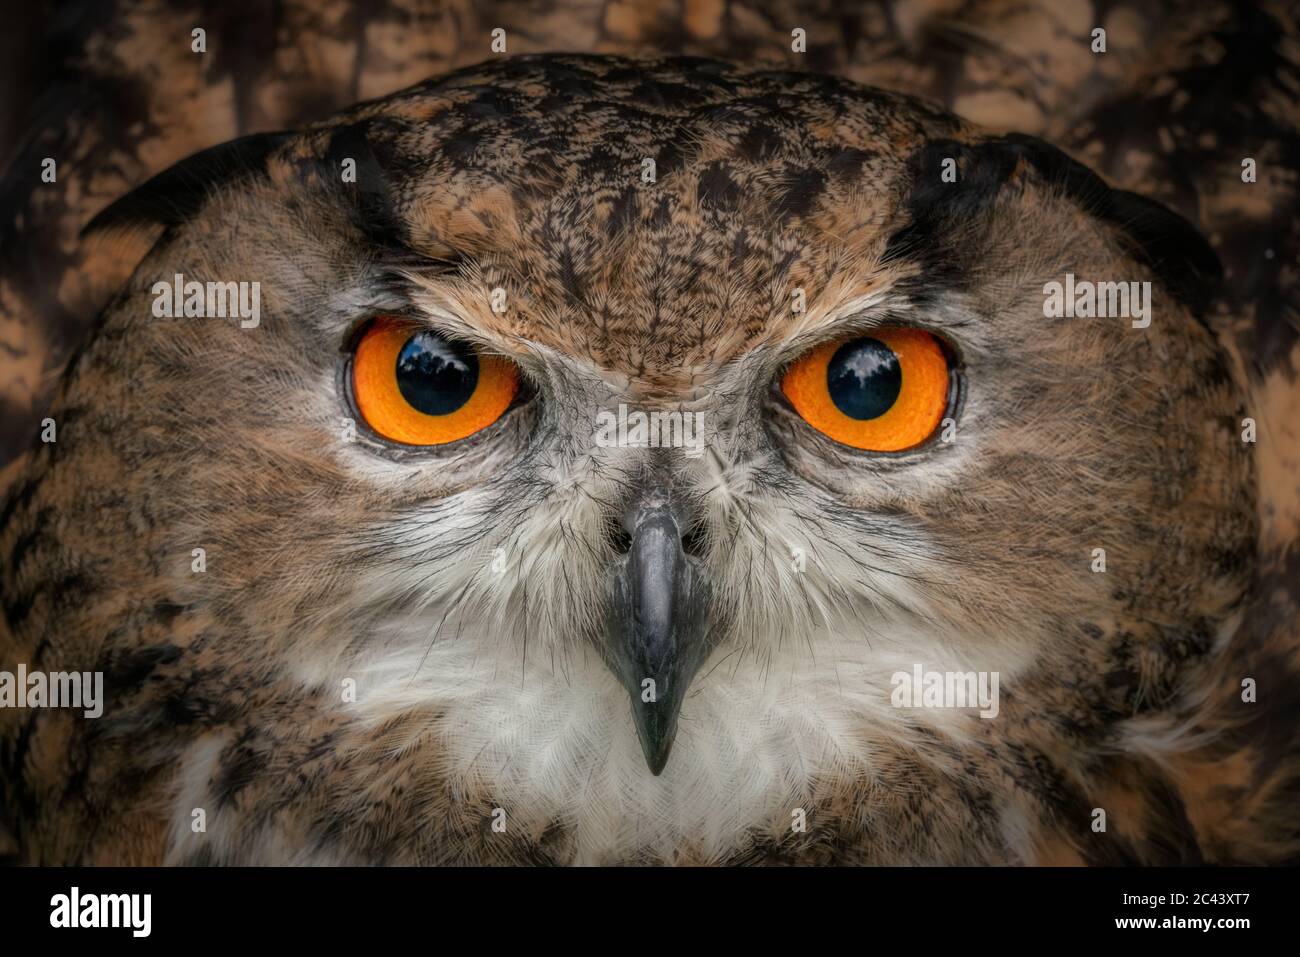 Die europäische Adlereule starrt mit leuchtend orangefarbenen Augen in die Kamera. Nahaufnahme des Eulenkopfs und der braunen Federn. Stechende Augen Stockfoto